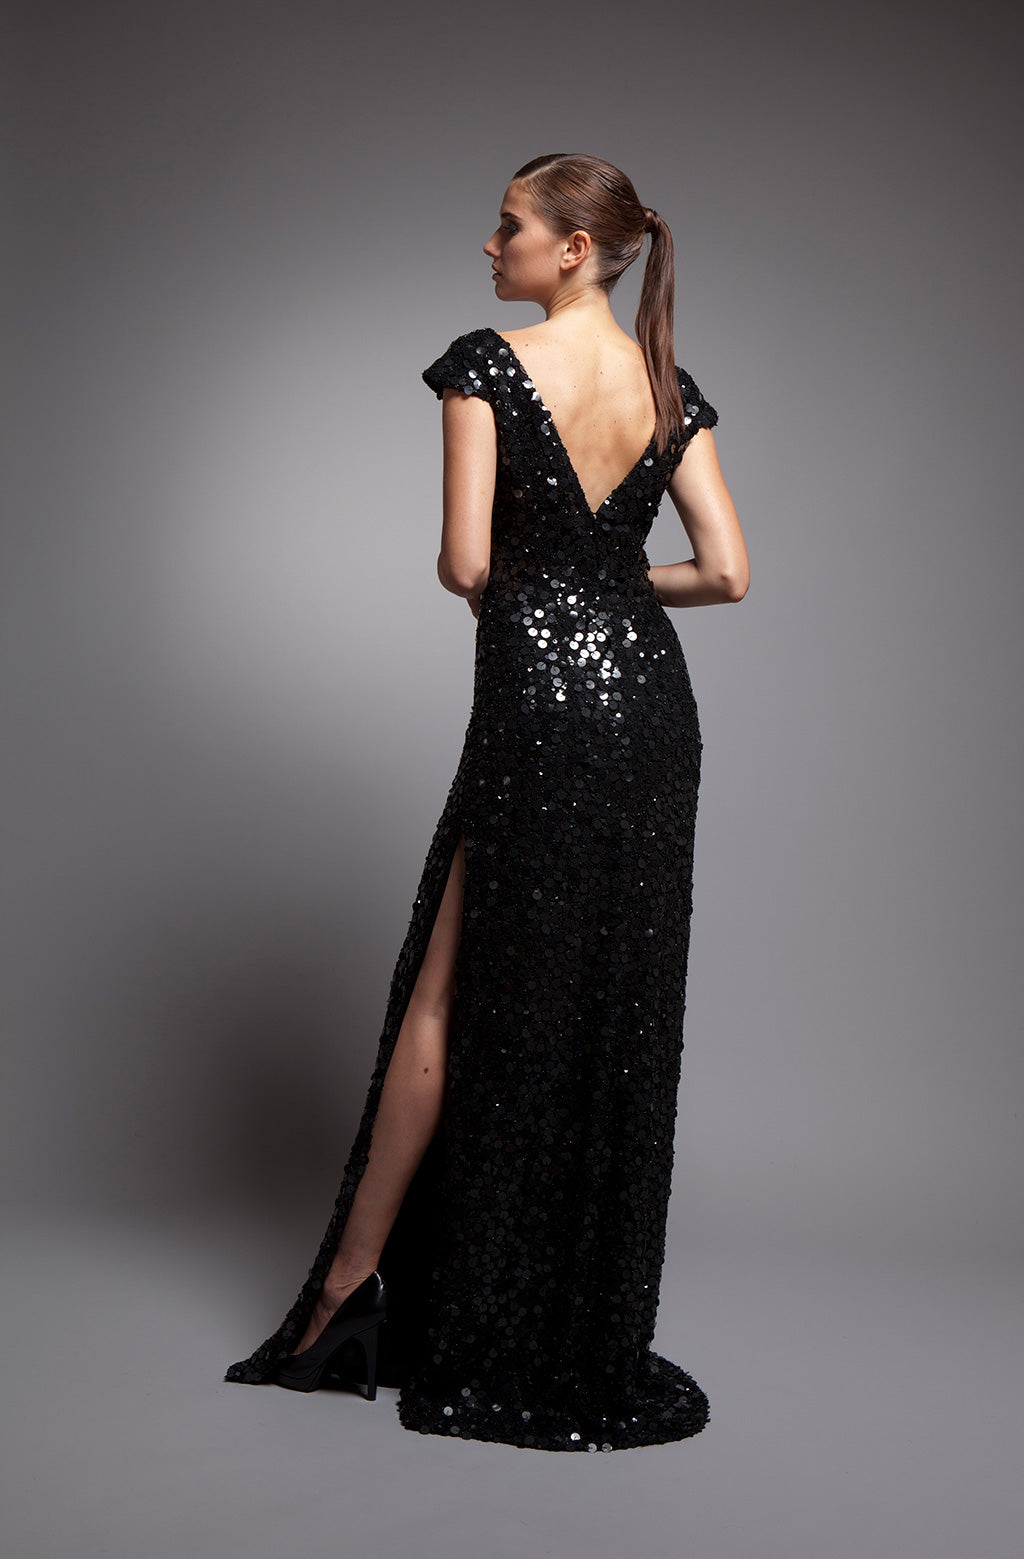 Black Long Sleeve Evening Gown Sequined Stretch Velvet V-Neck Mermaid Dress  | eBay